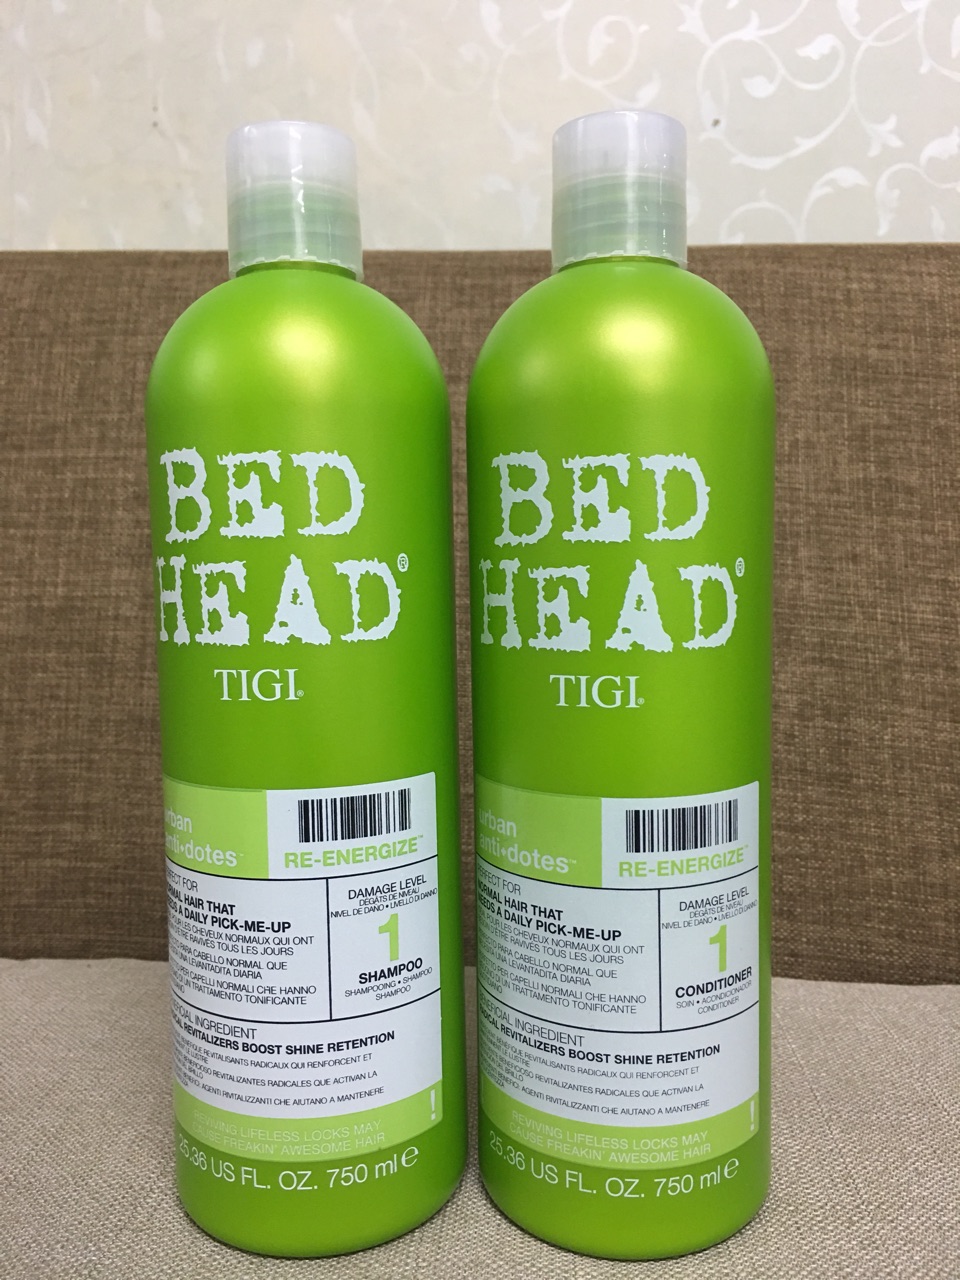 Cặp đôi gội - xả Bed Head Tigi xanh lá số 1 tái tạo sinh lực cho tóc